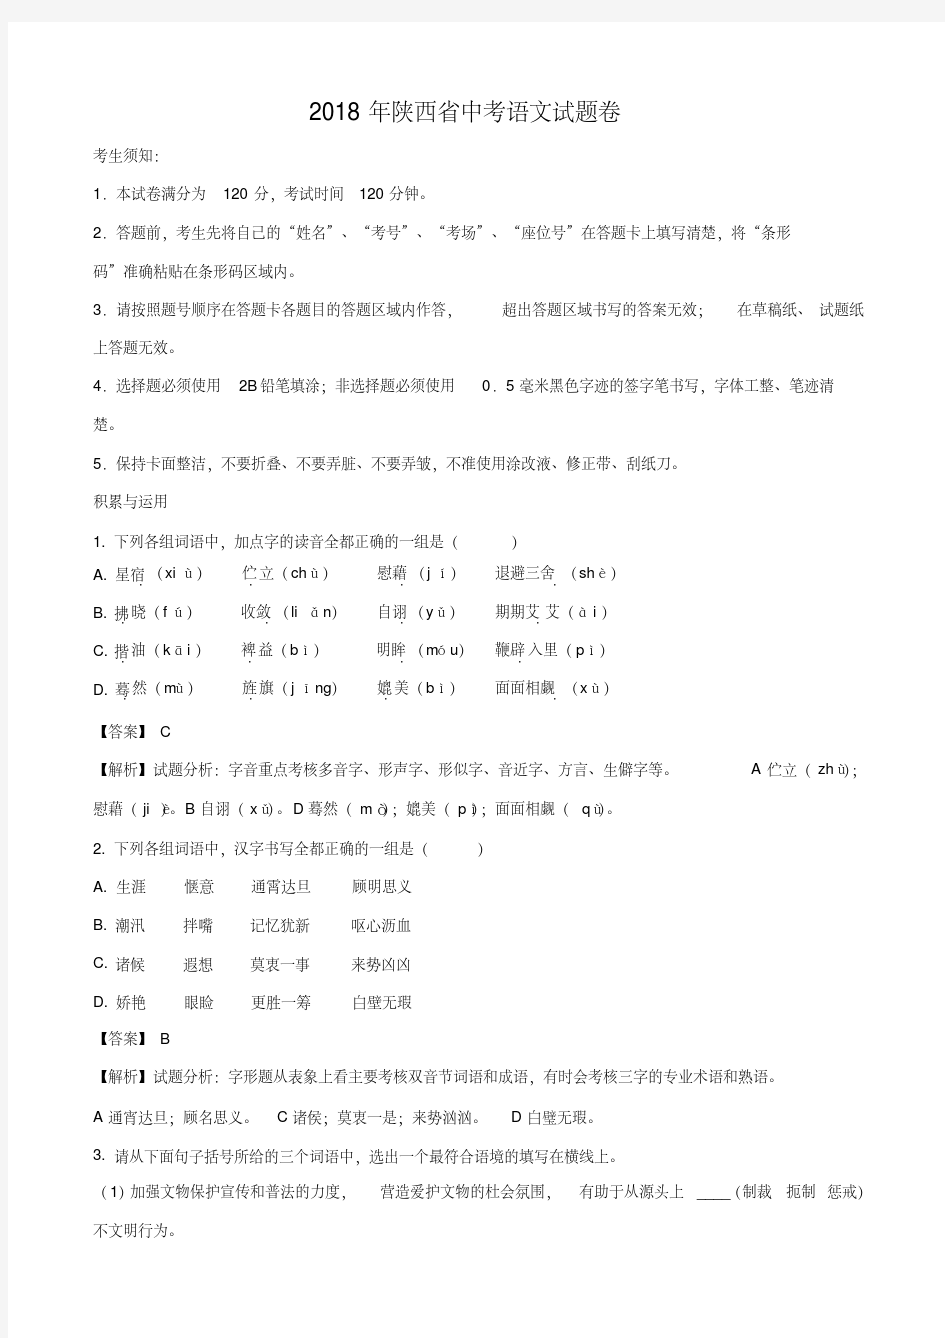 陕西省2018年中考语文试题及答案解析(20200420021851)